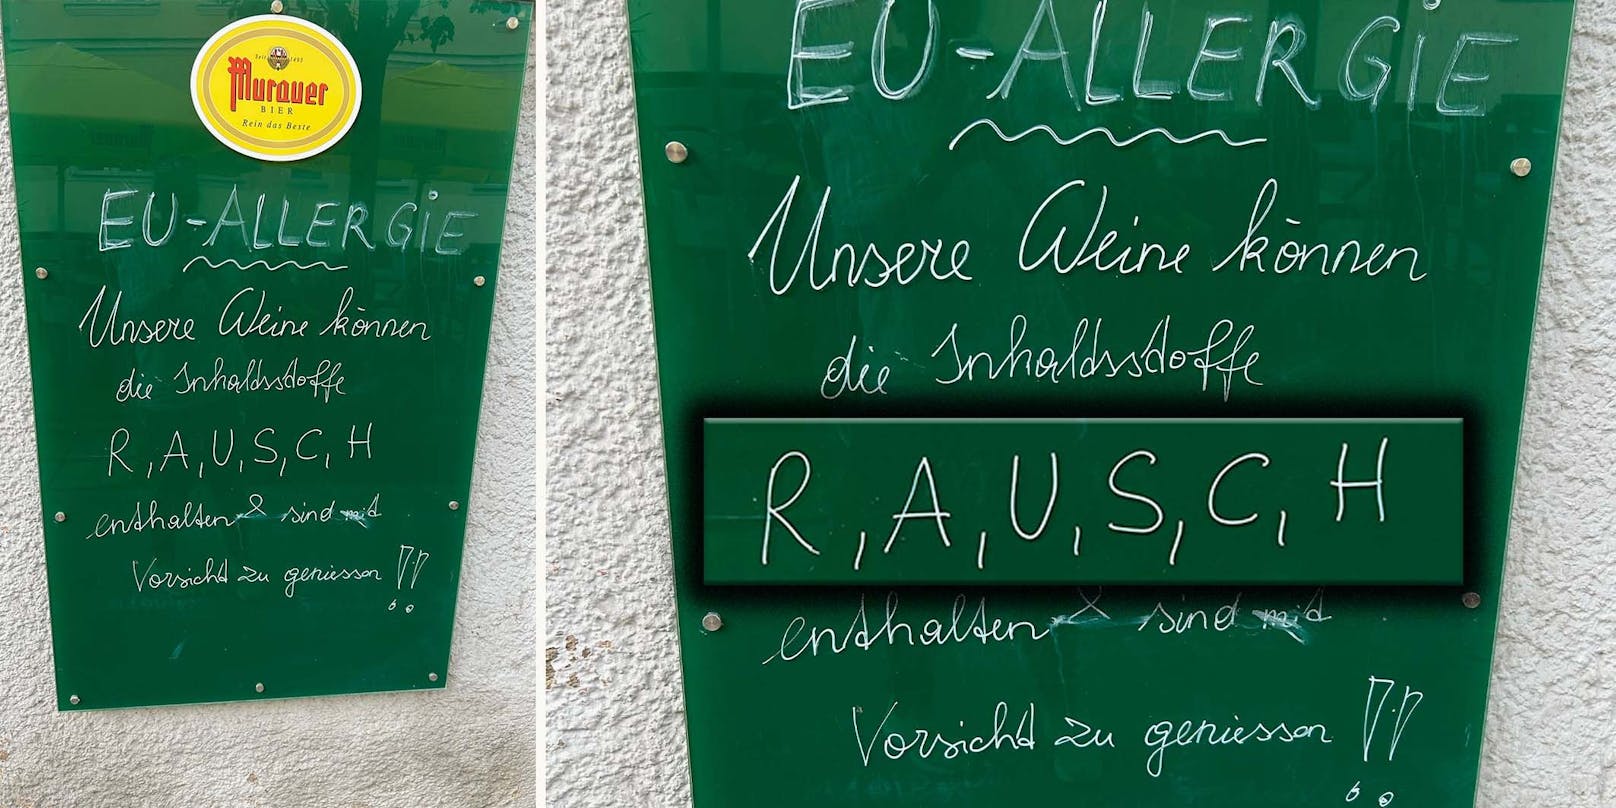 Wiener Wirtshaus warnt Gäste am Eingang vor "Rausch"